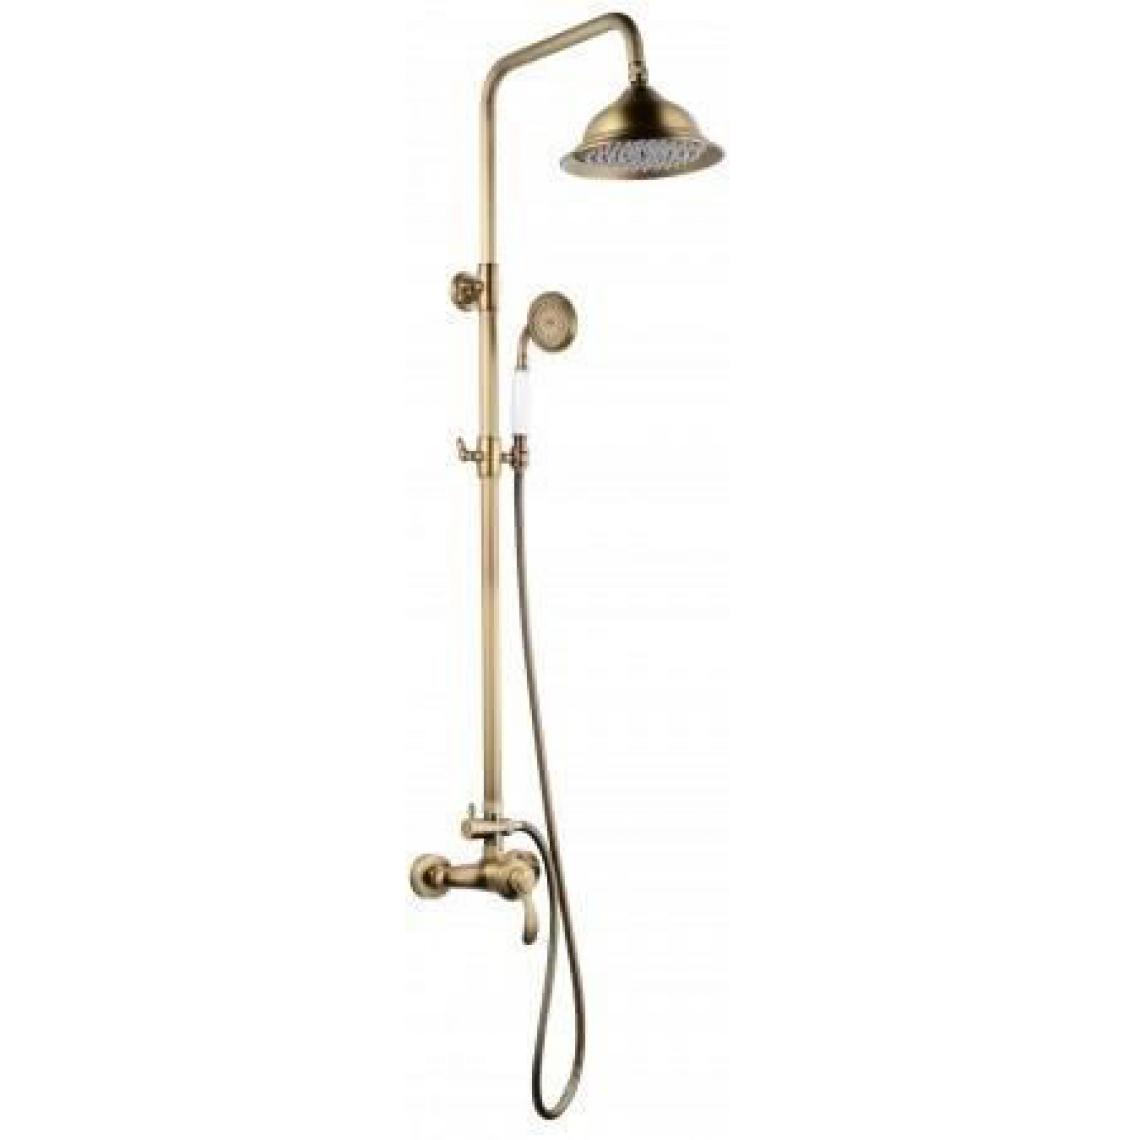 Rousseau - ROUSSEAU Colonne de douche avec robinet mitigeur mécanique Byron - Vieux bronze - Colonne de douche